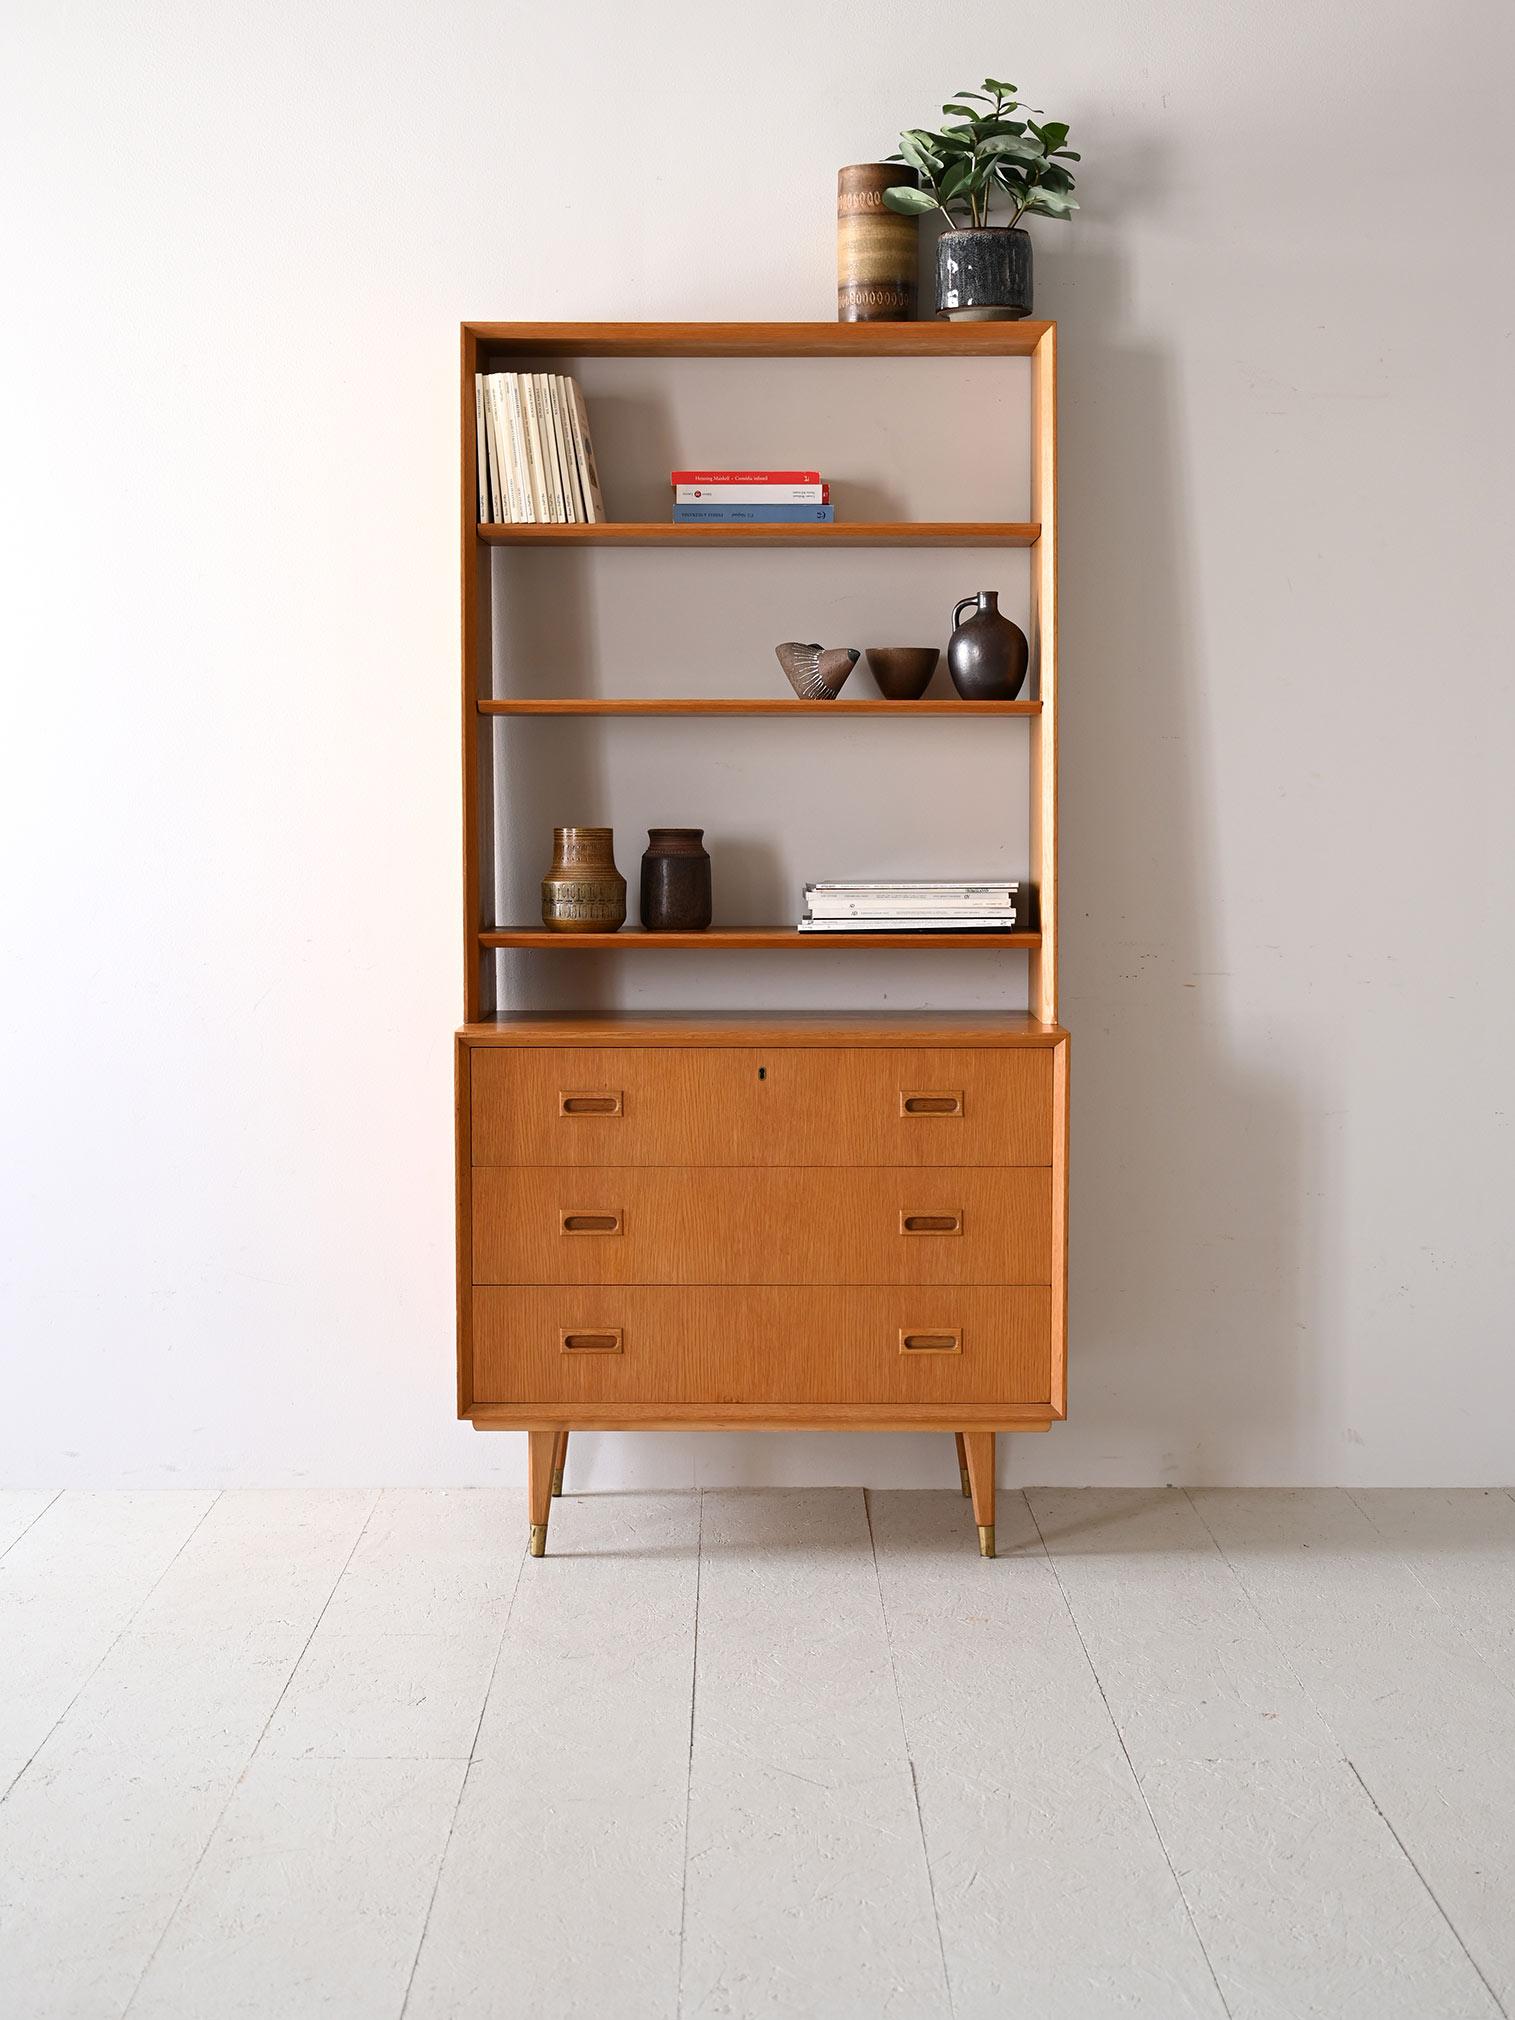 La bibliothèque en chêne nordique des années 1960 allie la simplicité du design à la fonctionnalité quotidienne.
Le meuble comporte trois tiroirs avec des poignées en bois sculpté.
Les étagères supérieures ouvertes et aérées offrent un large espace